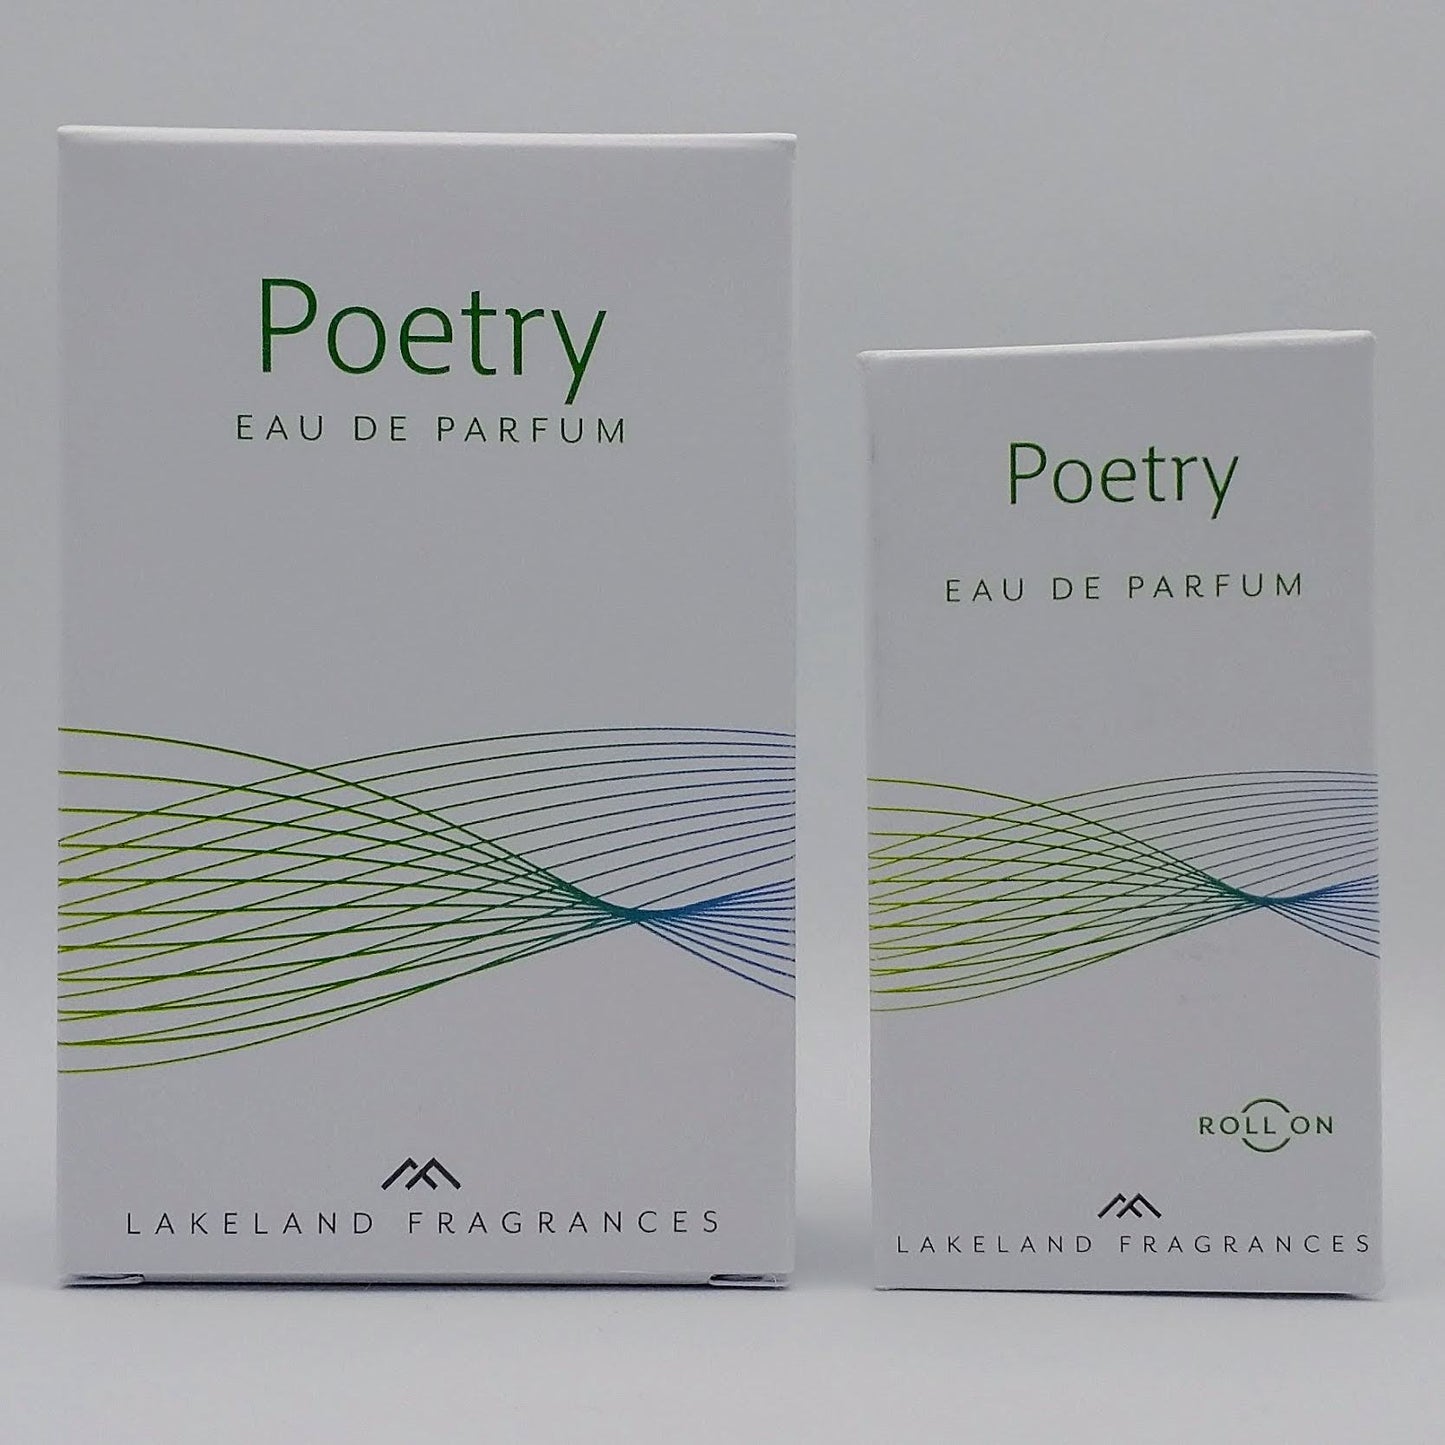 Poetry Eau de Parfum Gift Set